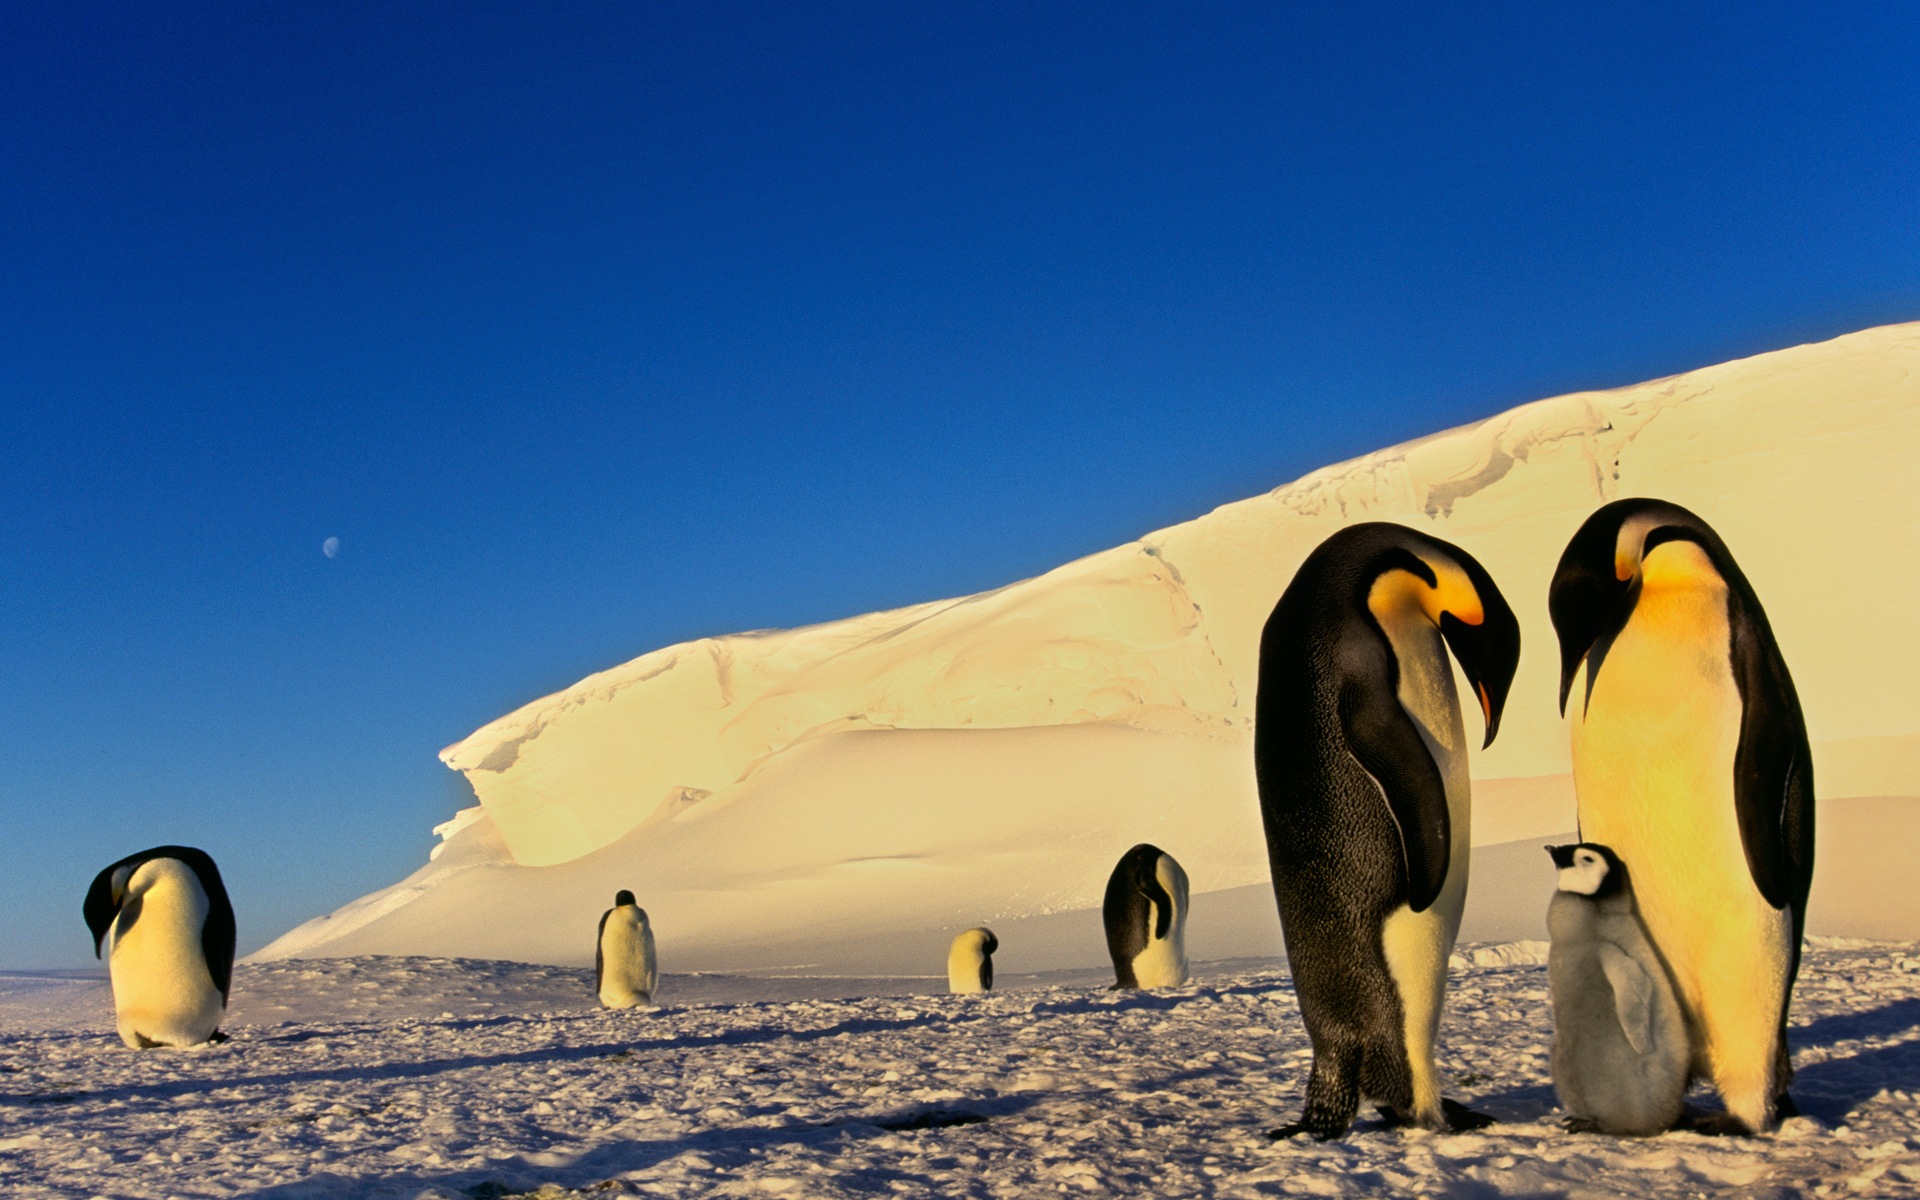 Windowsの8壁紙 南極 雪の風景 南極のペンギン 3 19x10 壁紙ダウンロード Windowsの8壁紙 南極 雪の風景 南極のペンギン システム 壁紙 V3の壁紙